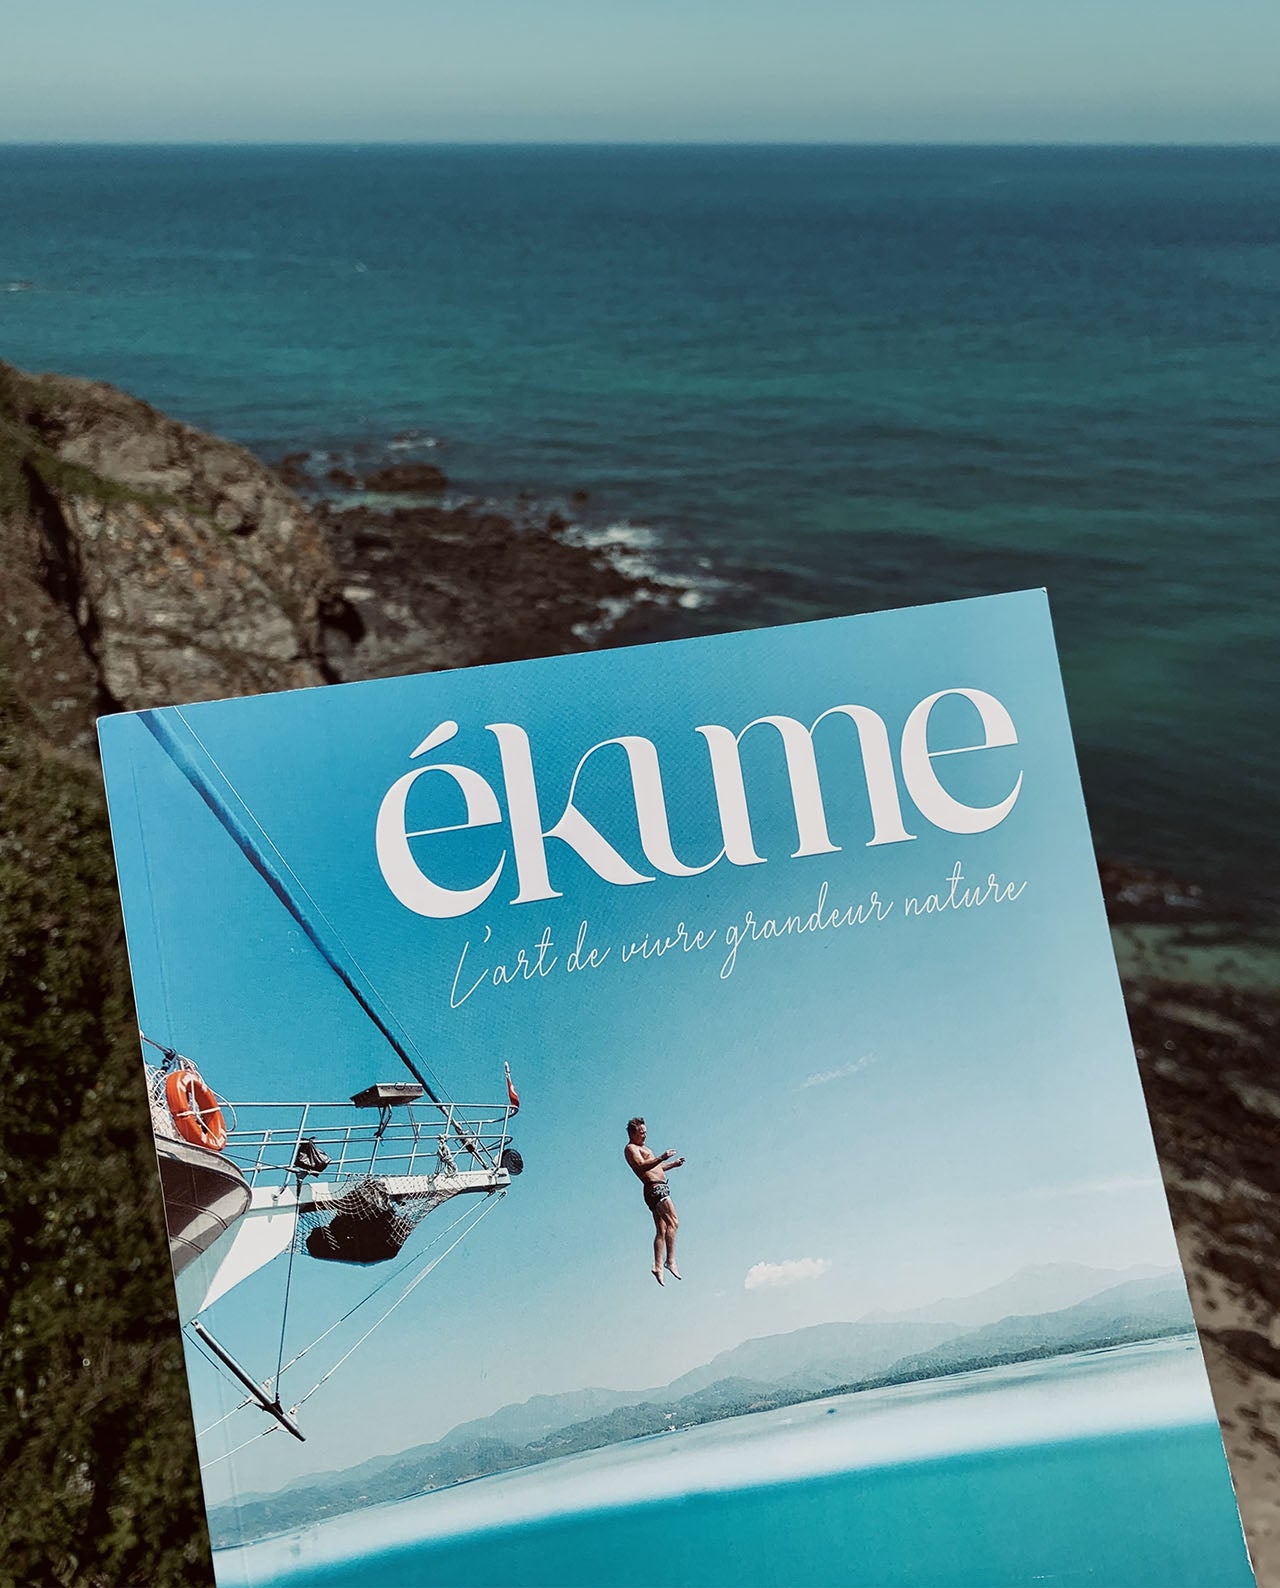 marché commun ékume magazine art de vivre nature engagement écologique gastronomie culture aventure presse papier volume 1